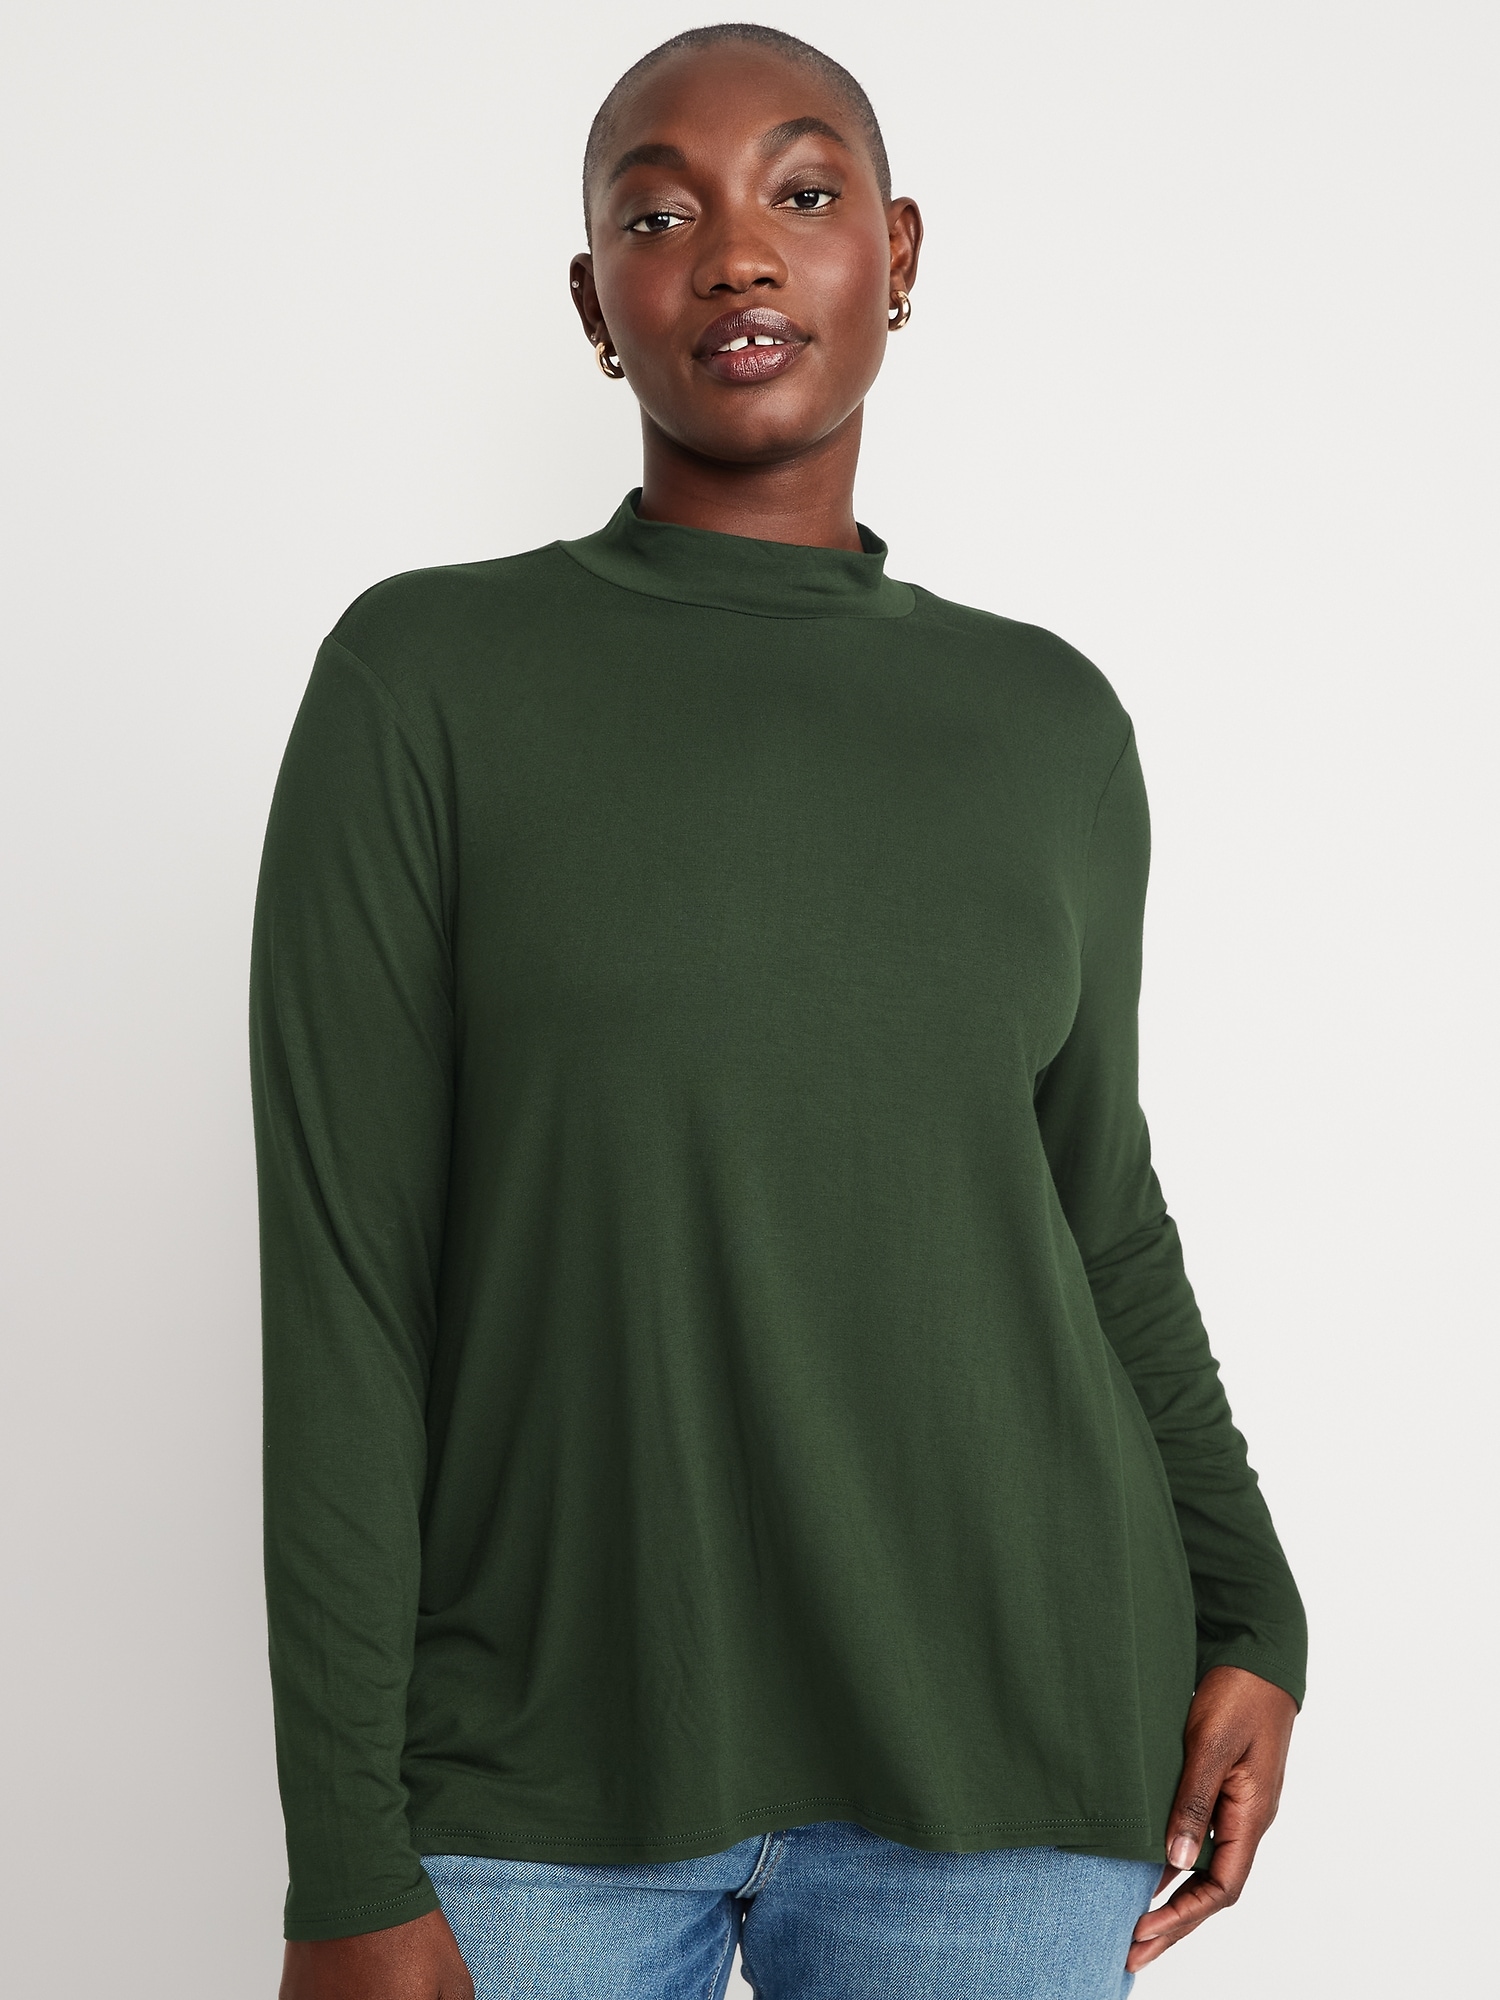 Long-Sleeve Luxe Mock-Neck Swing T-Shirt for Women